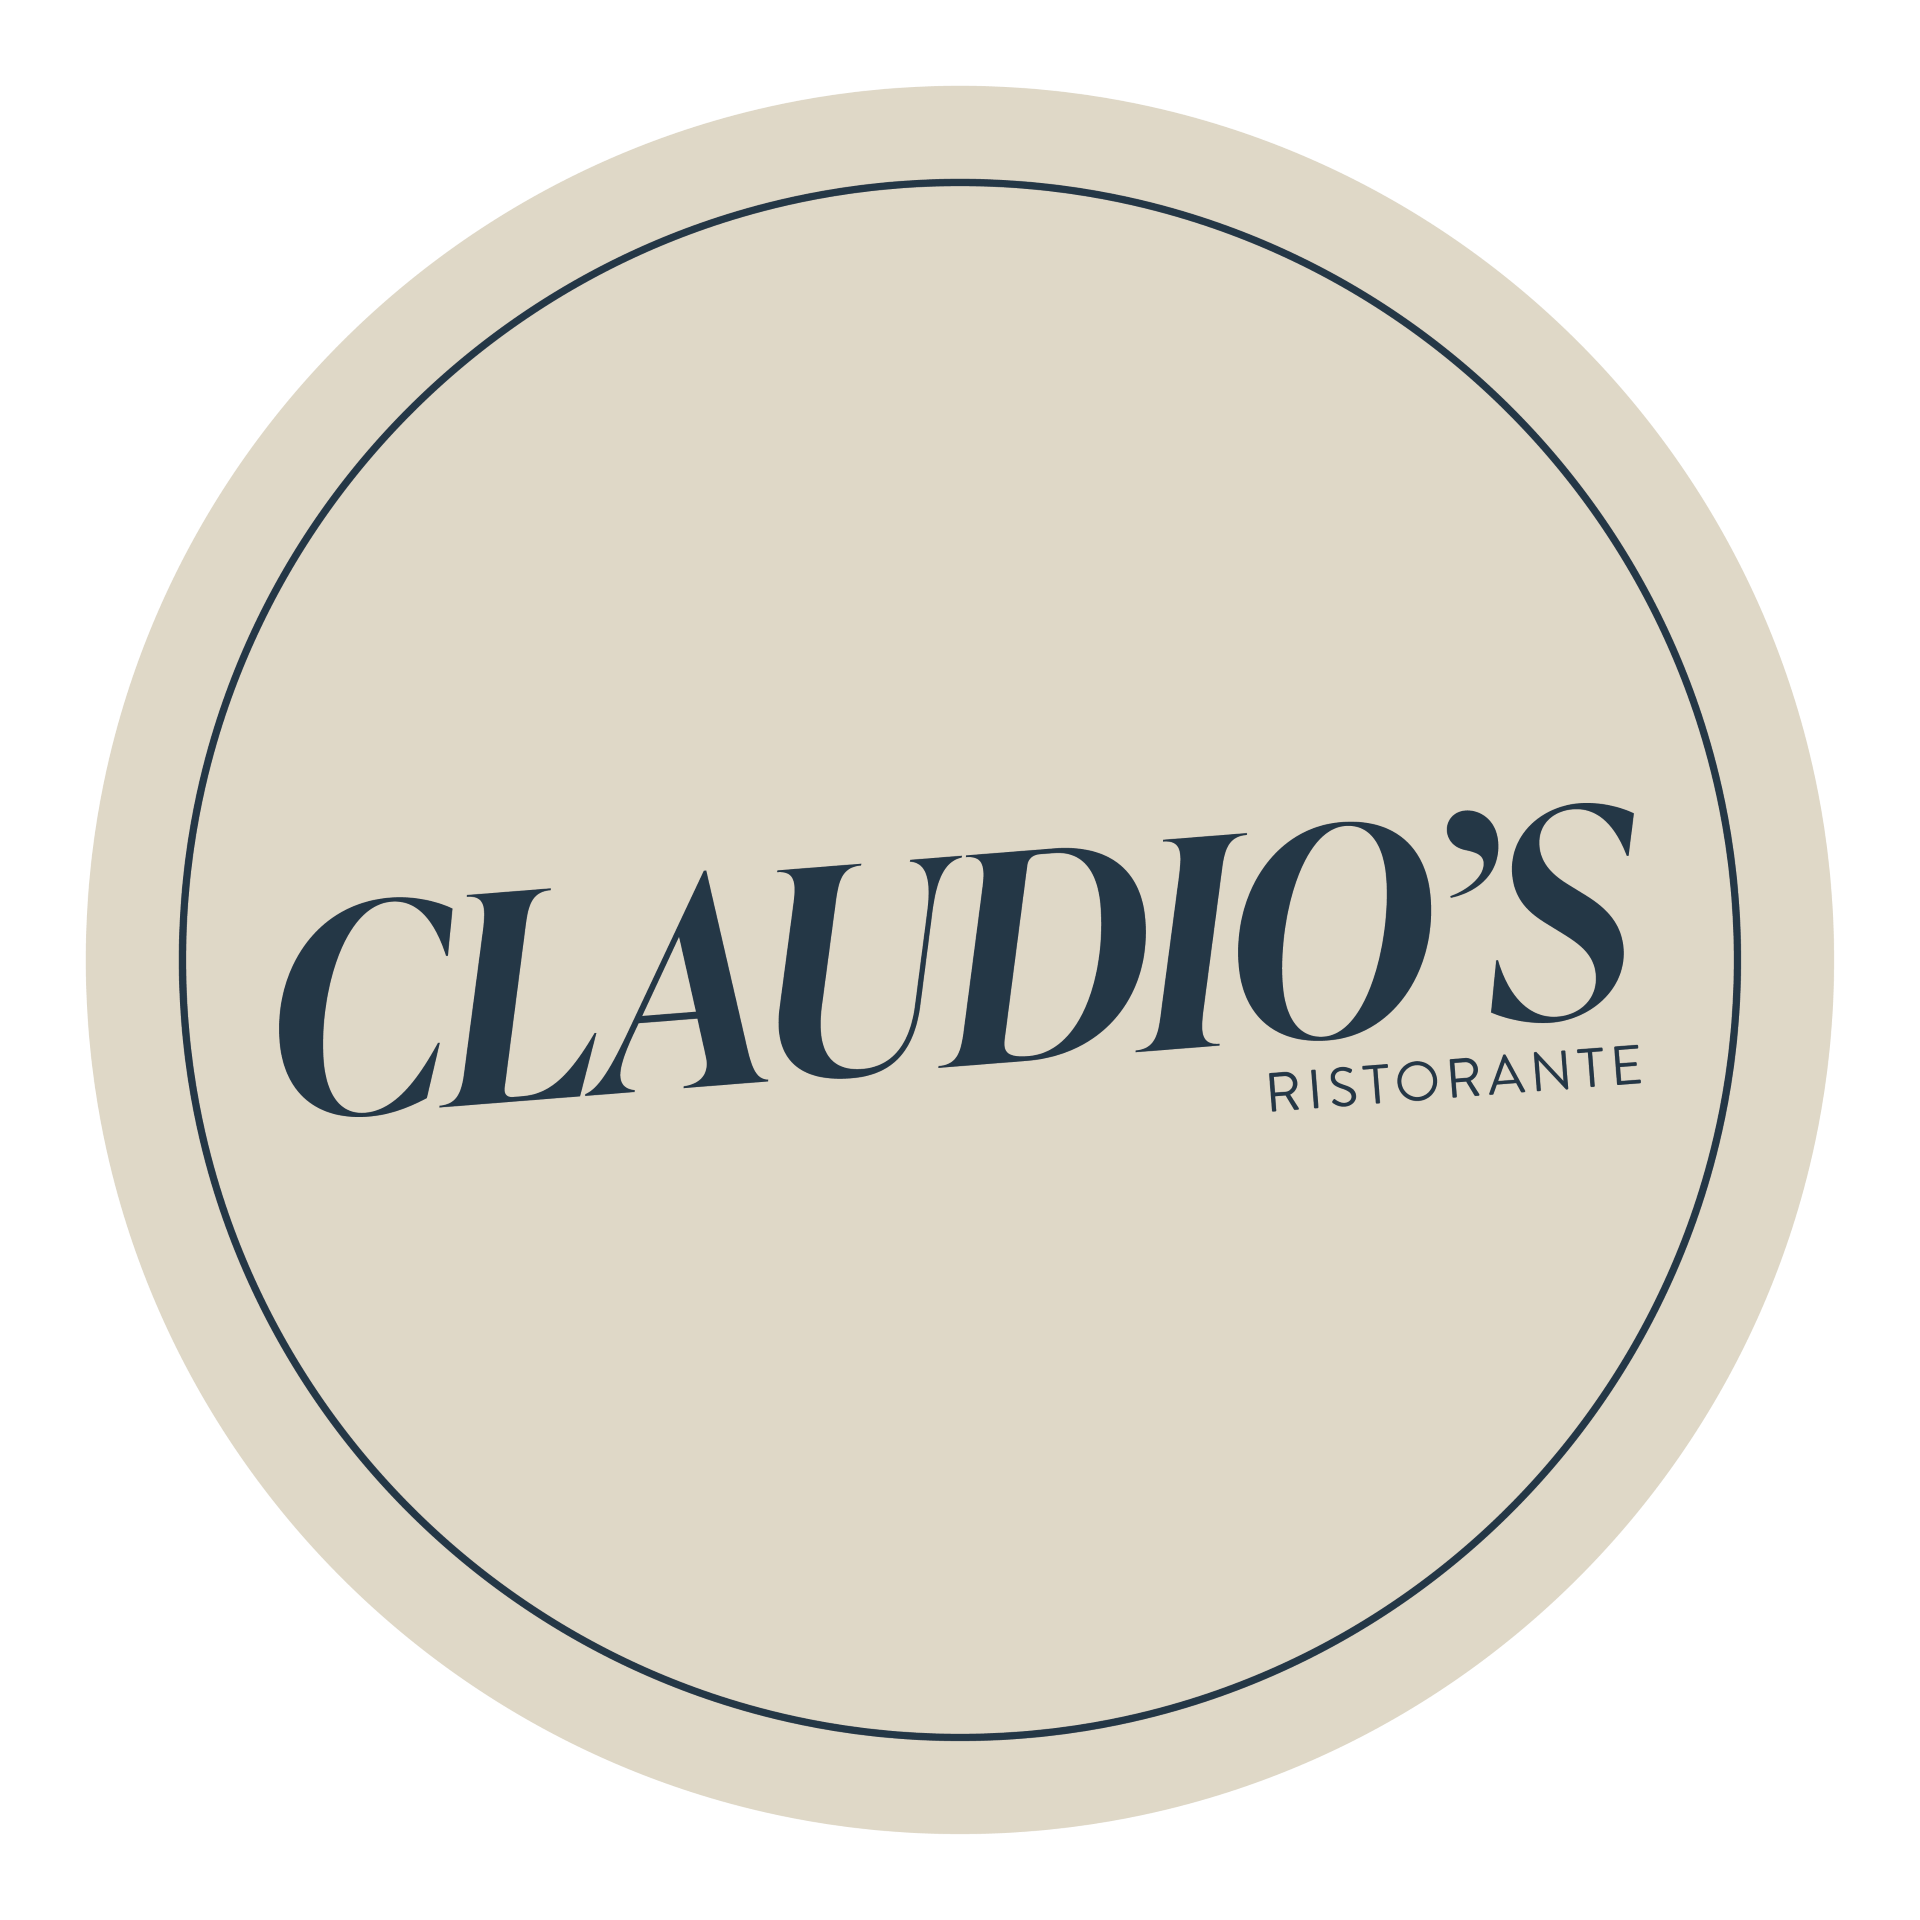 Claudios